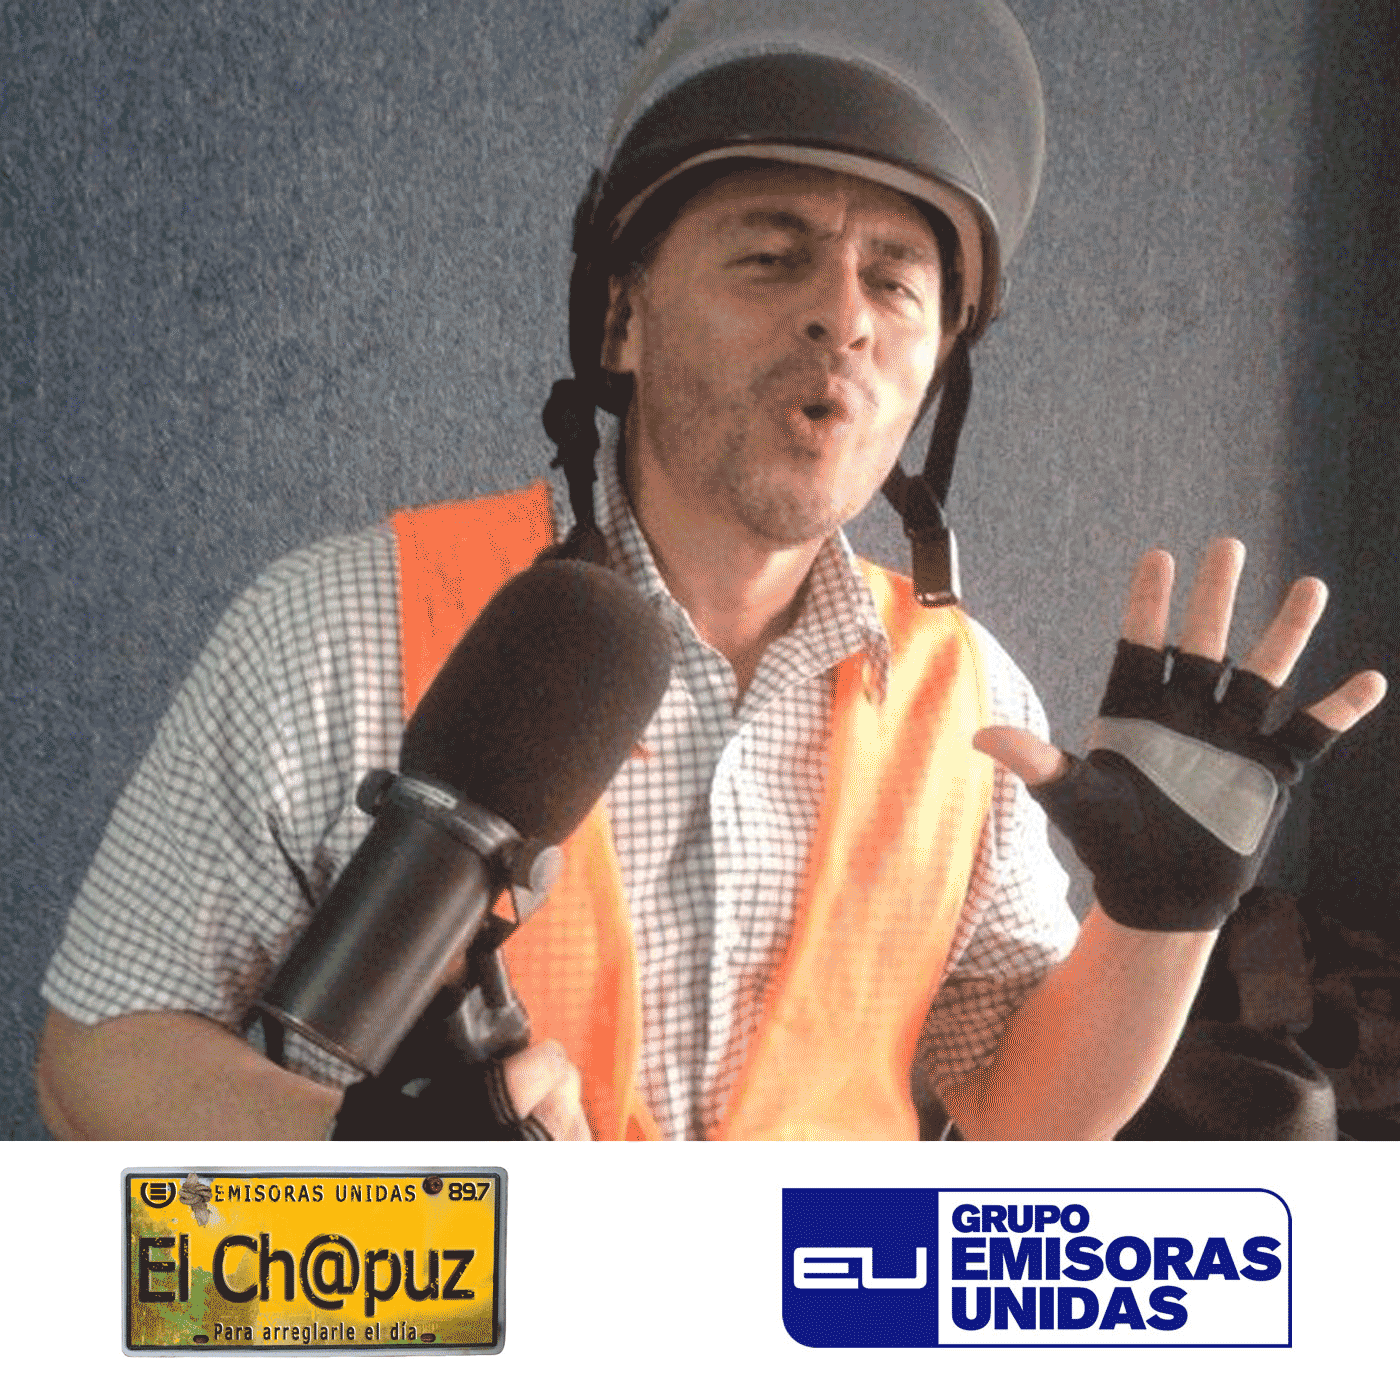 EC18 - El Chapuz - Emisoras unidas - #QueSeLoLLeveElMar